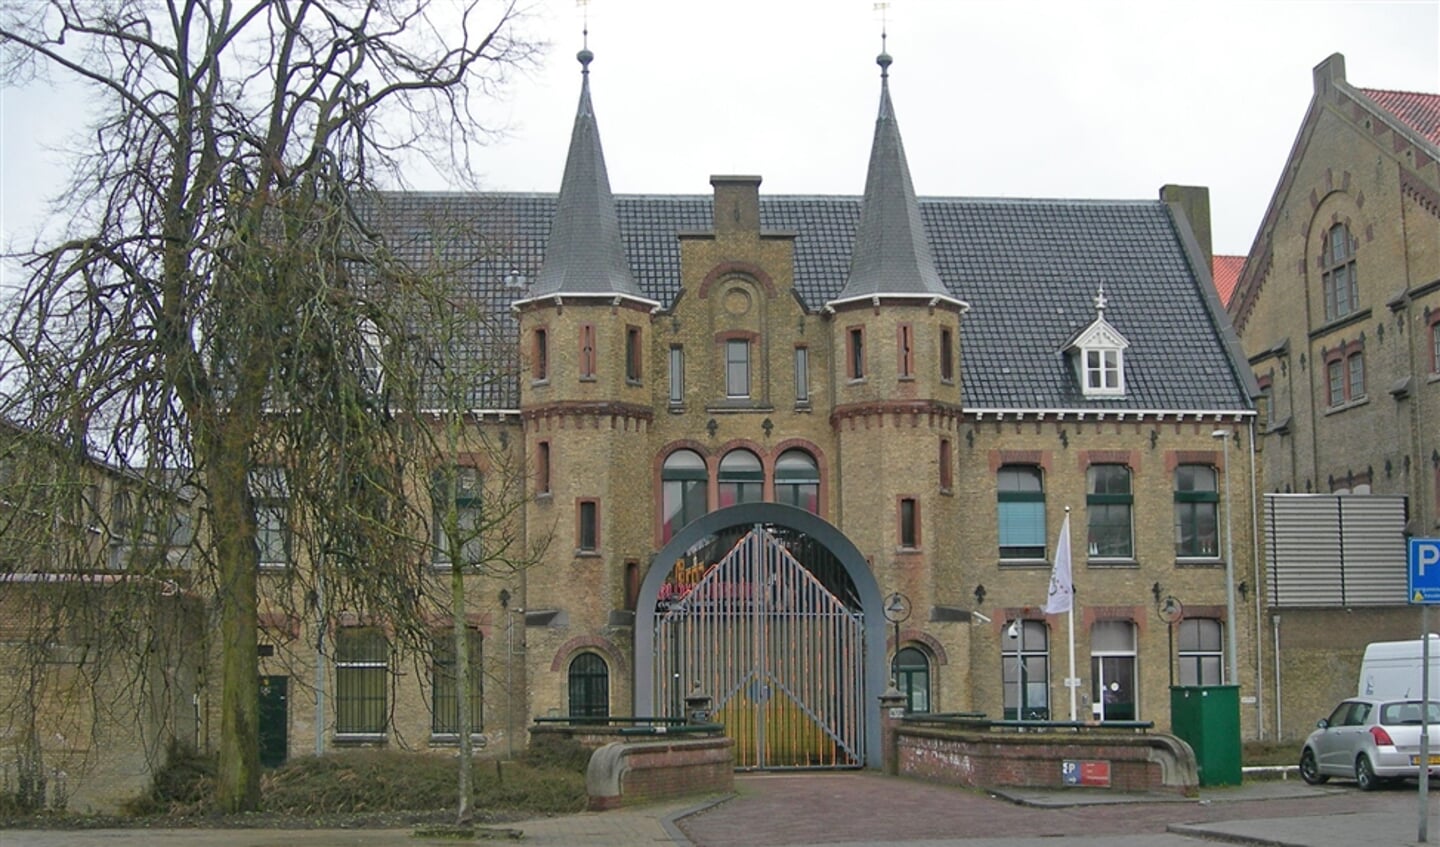 Op 8 december 1944 werden 51 mensen door het Friese verzet uit de gevangenis van Leeuwarden bevrijd. De foto dateert uit 2010.